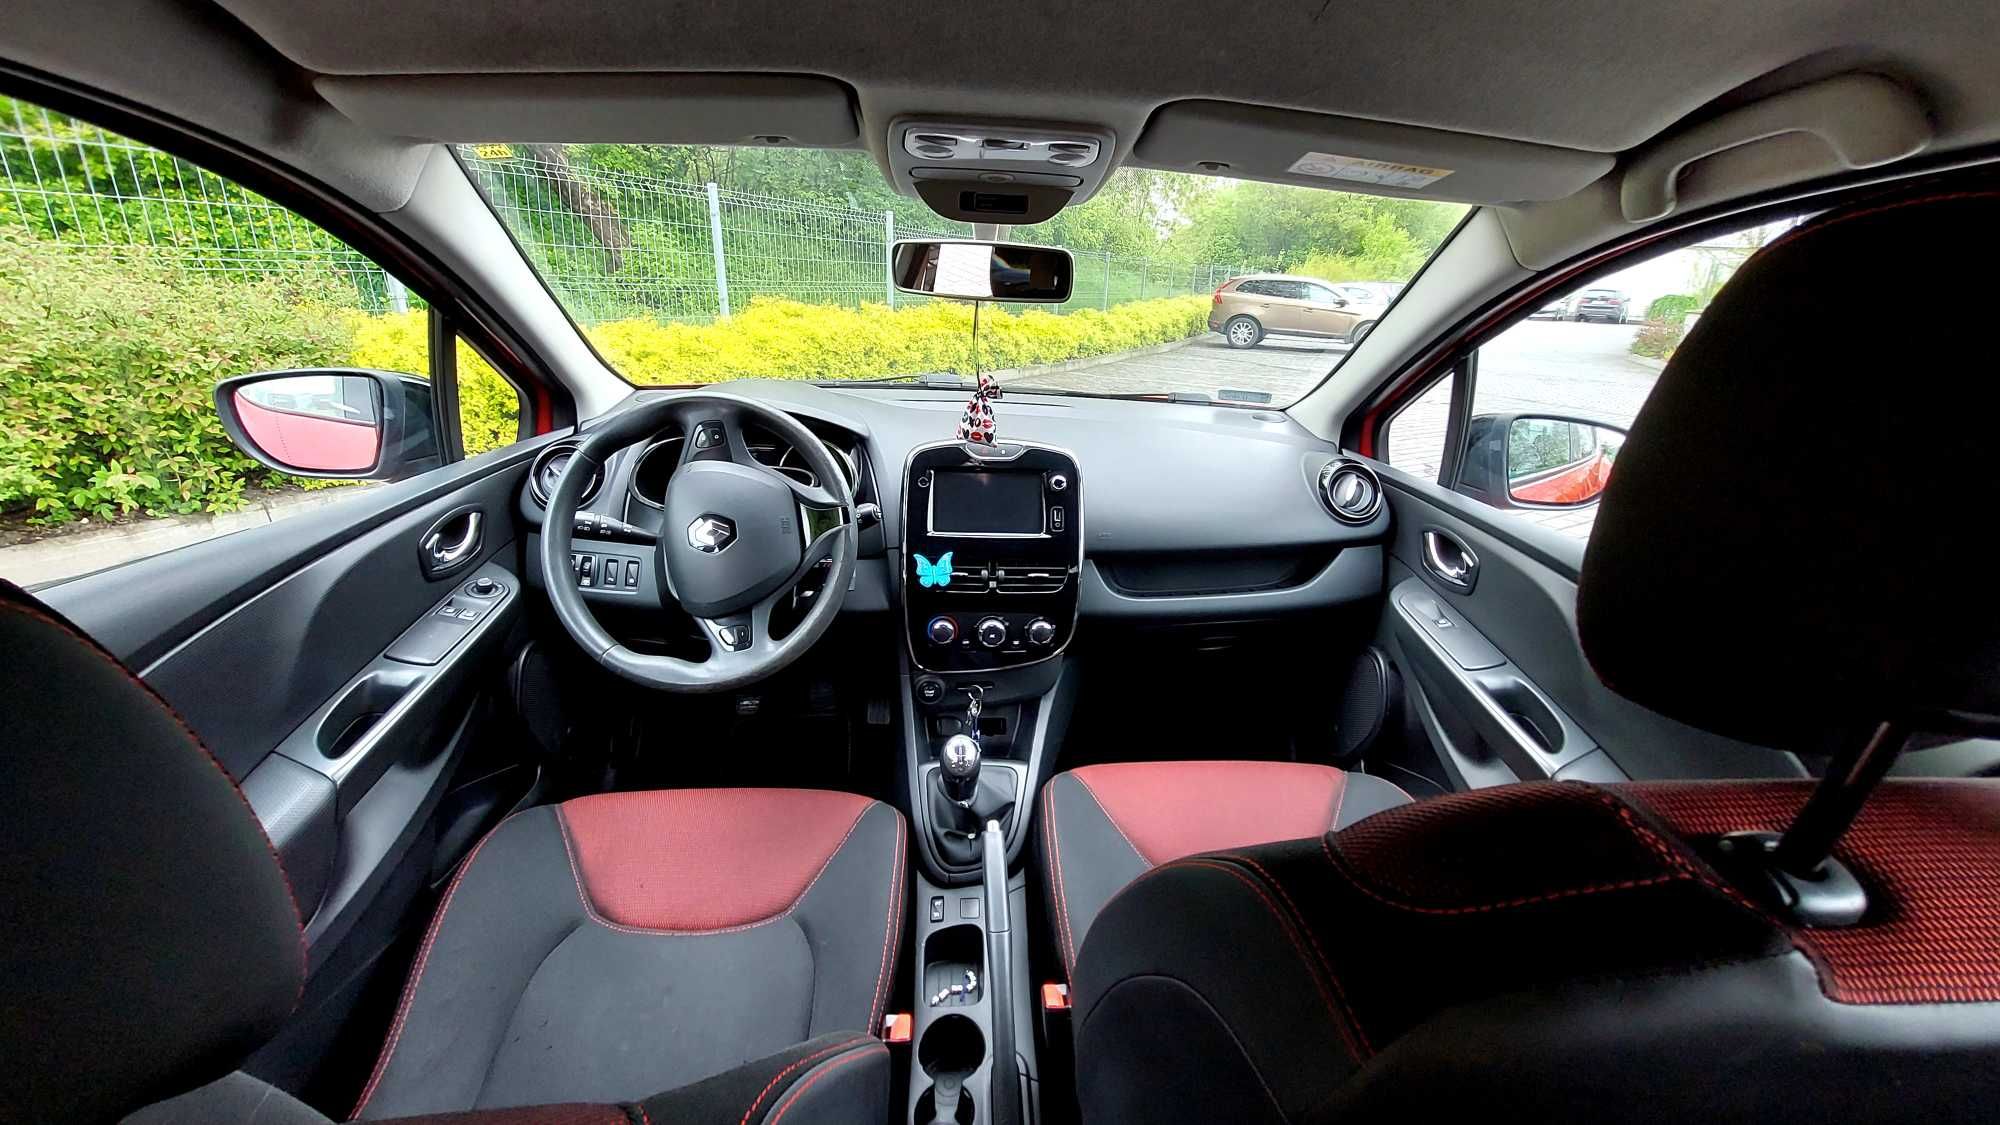 Renault Clio IV czerwony 0.9  90 KM2013